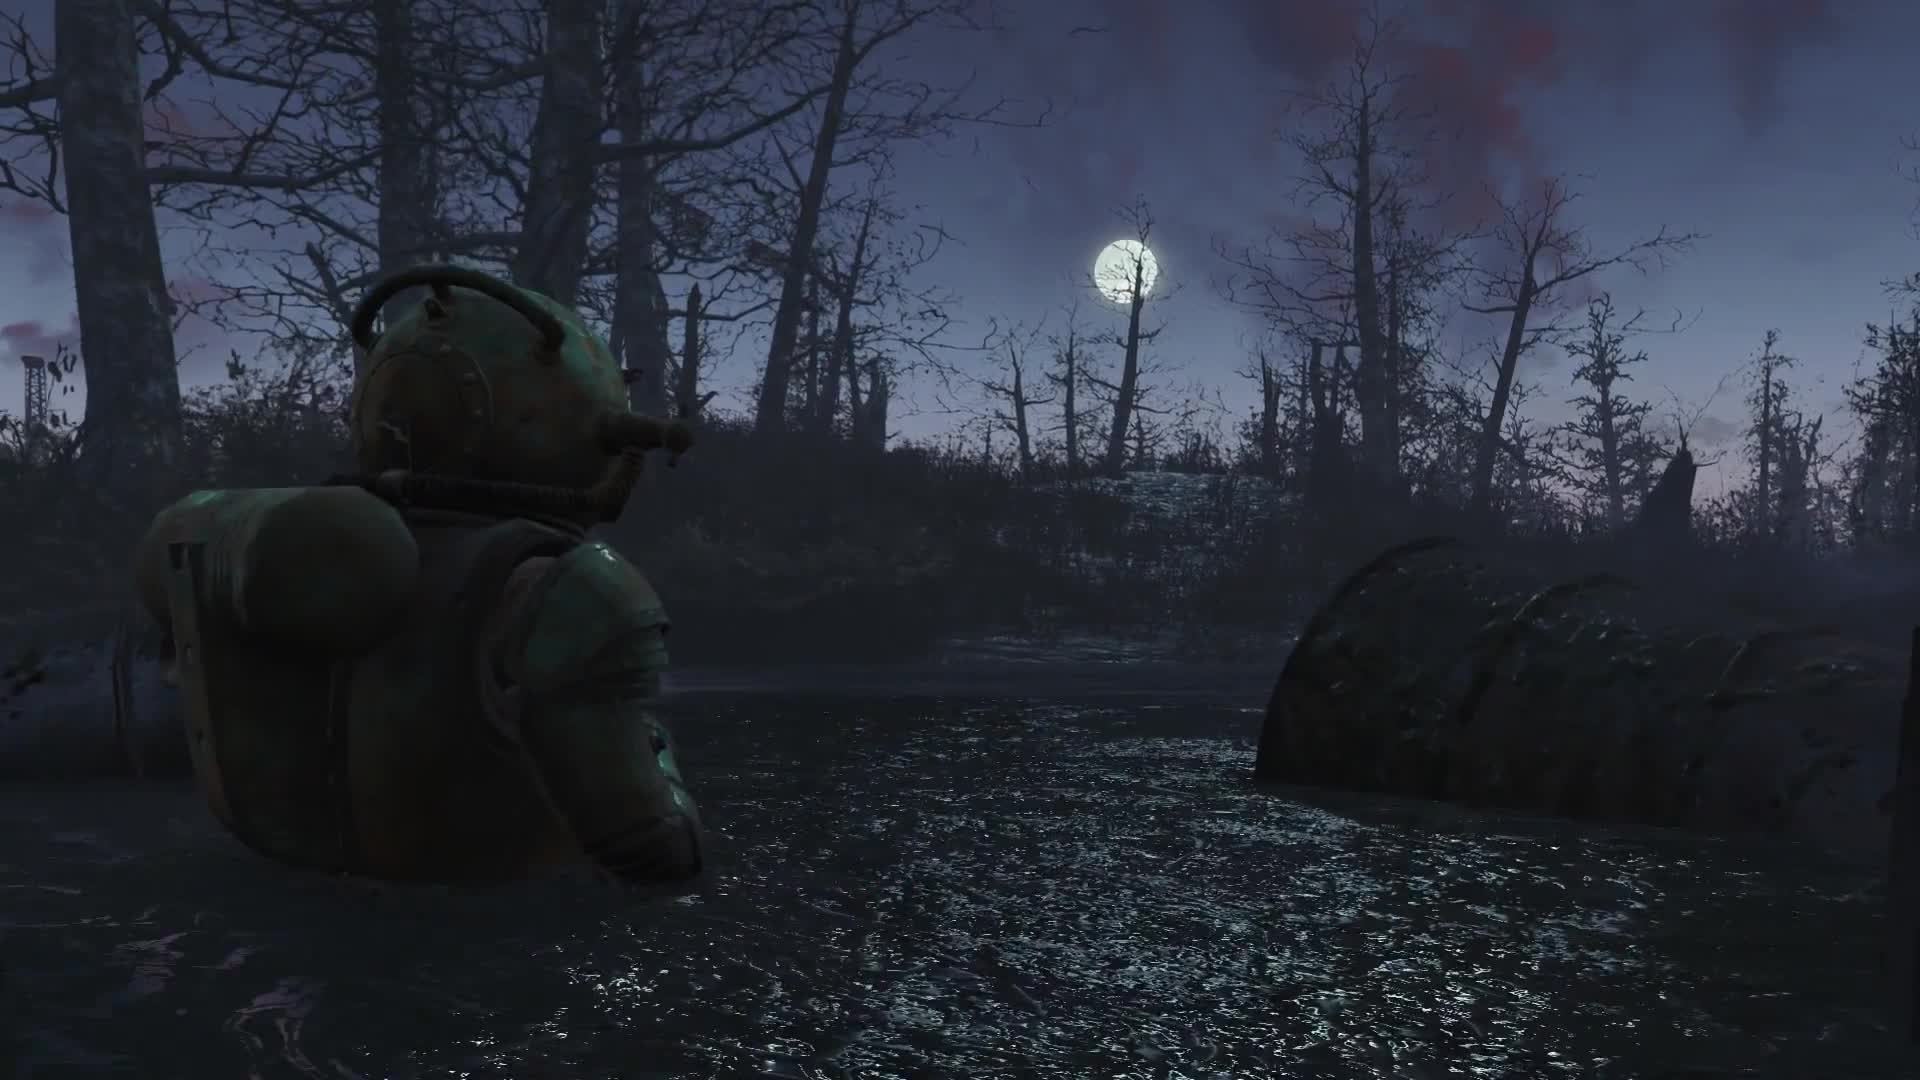 Fallout 4: Exploring Far Harbor 